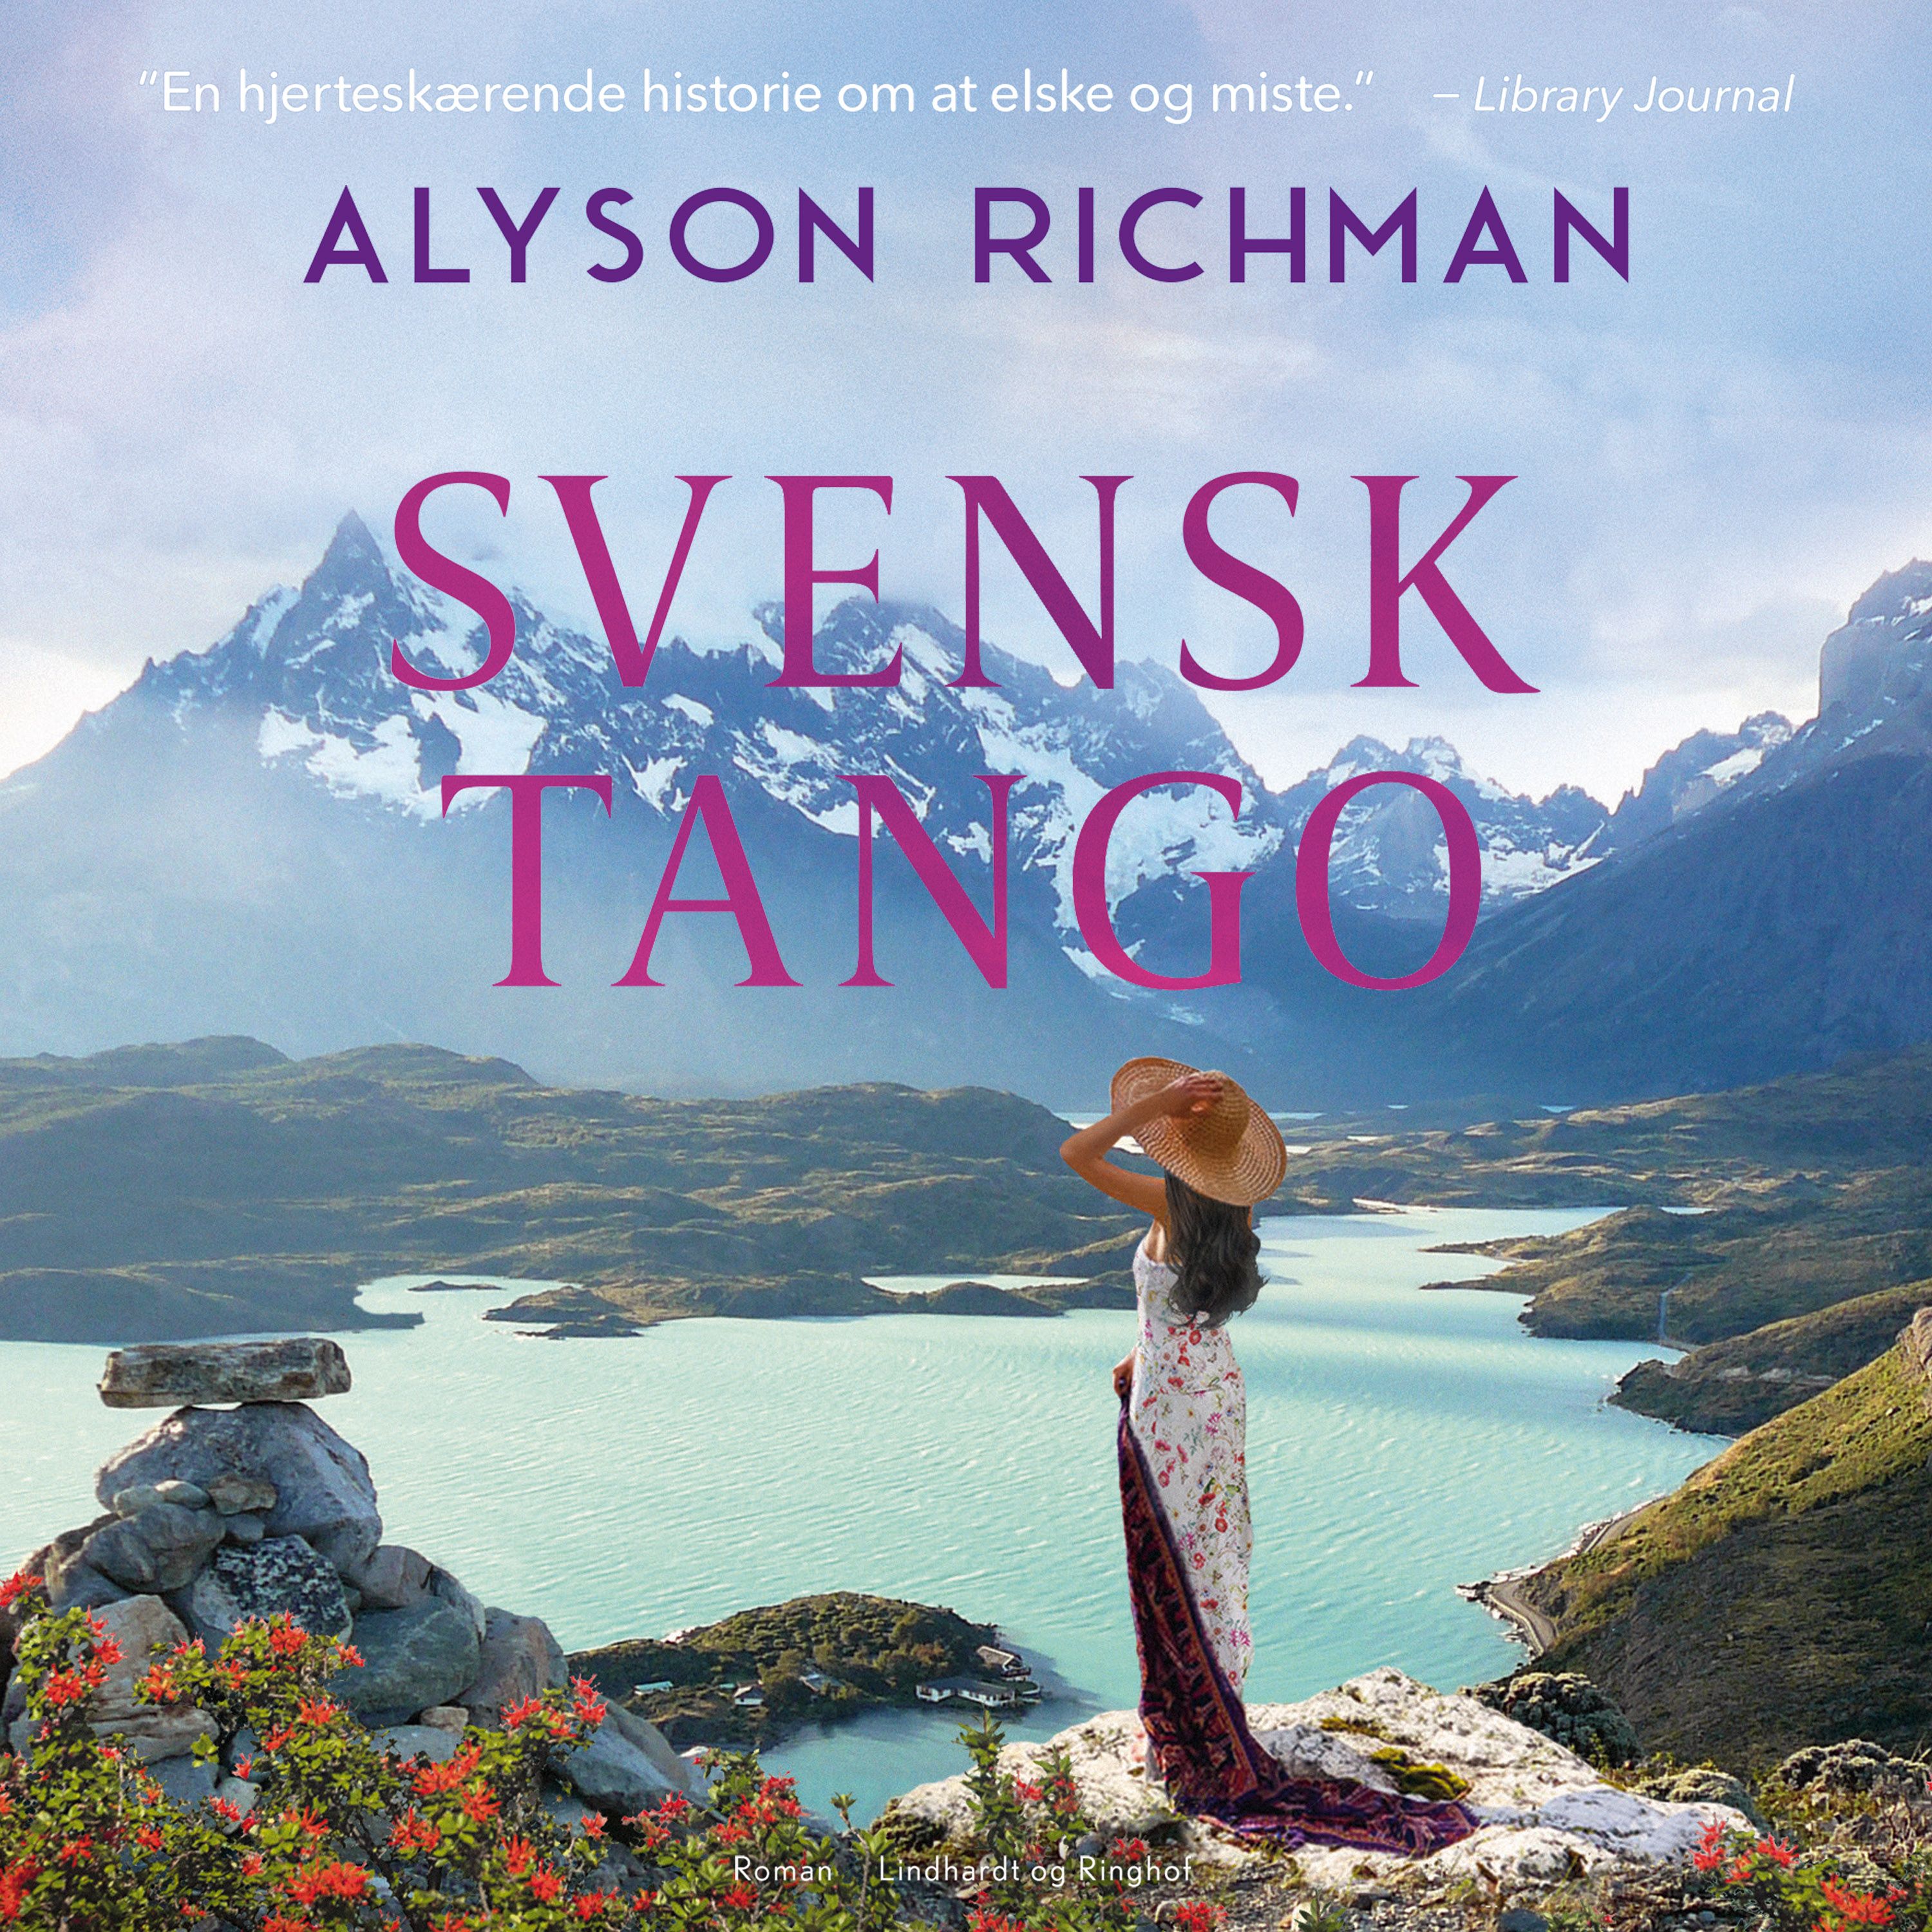 Svensk tango, ljudbok av Alyson Richman